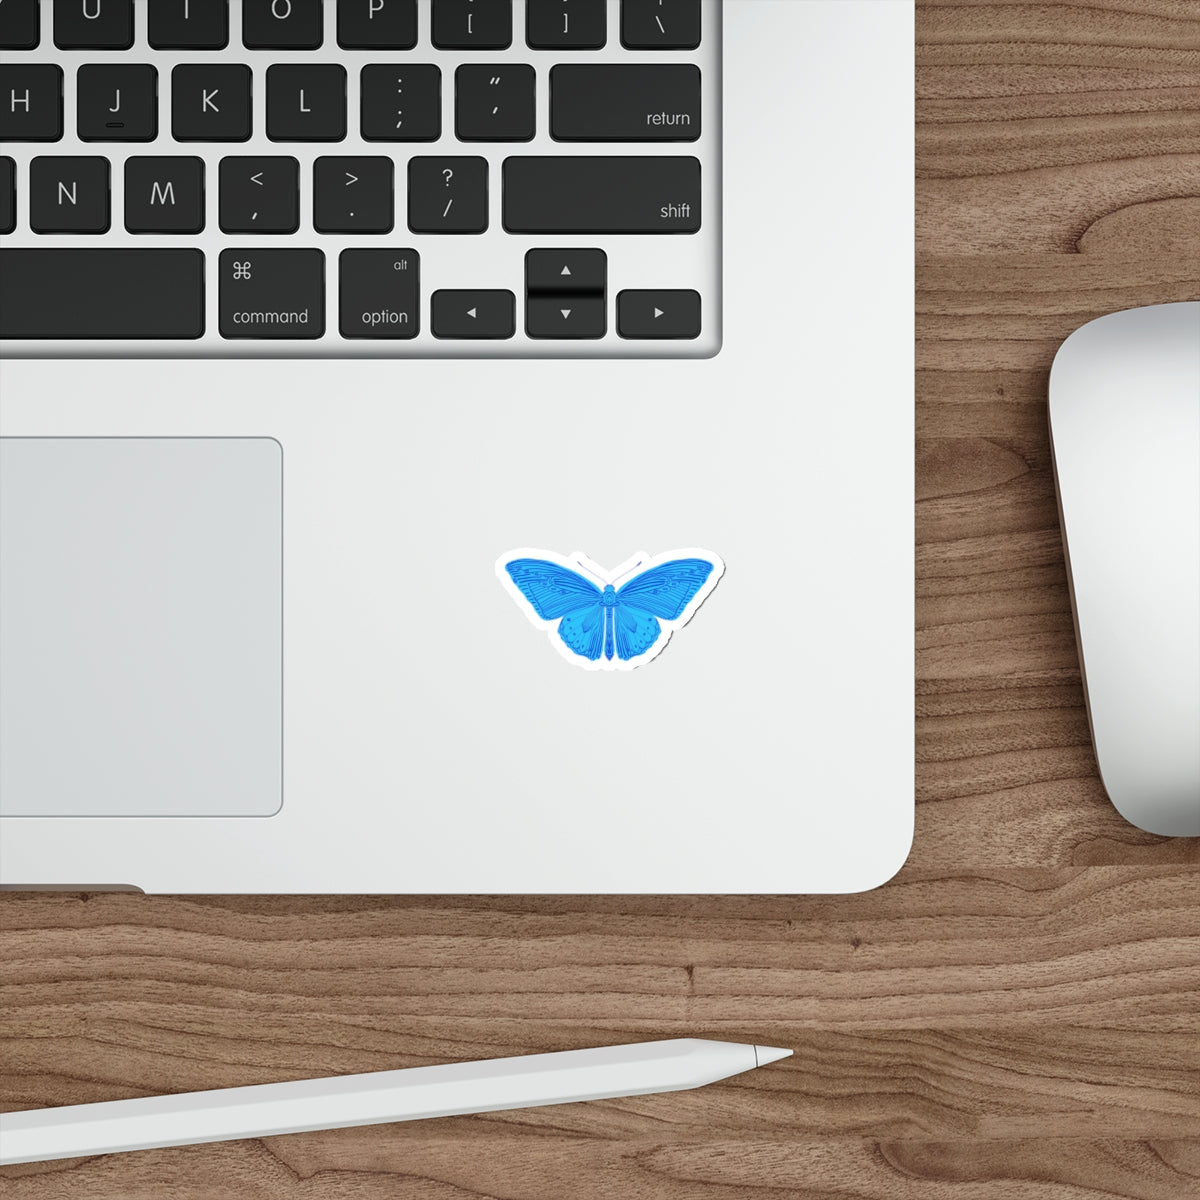 Block Print Style Butterfly in Blue Die Cut Sticker